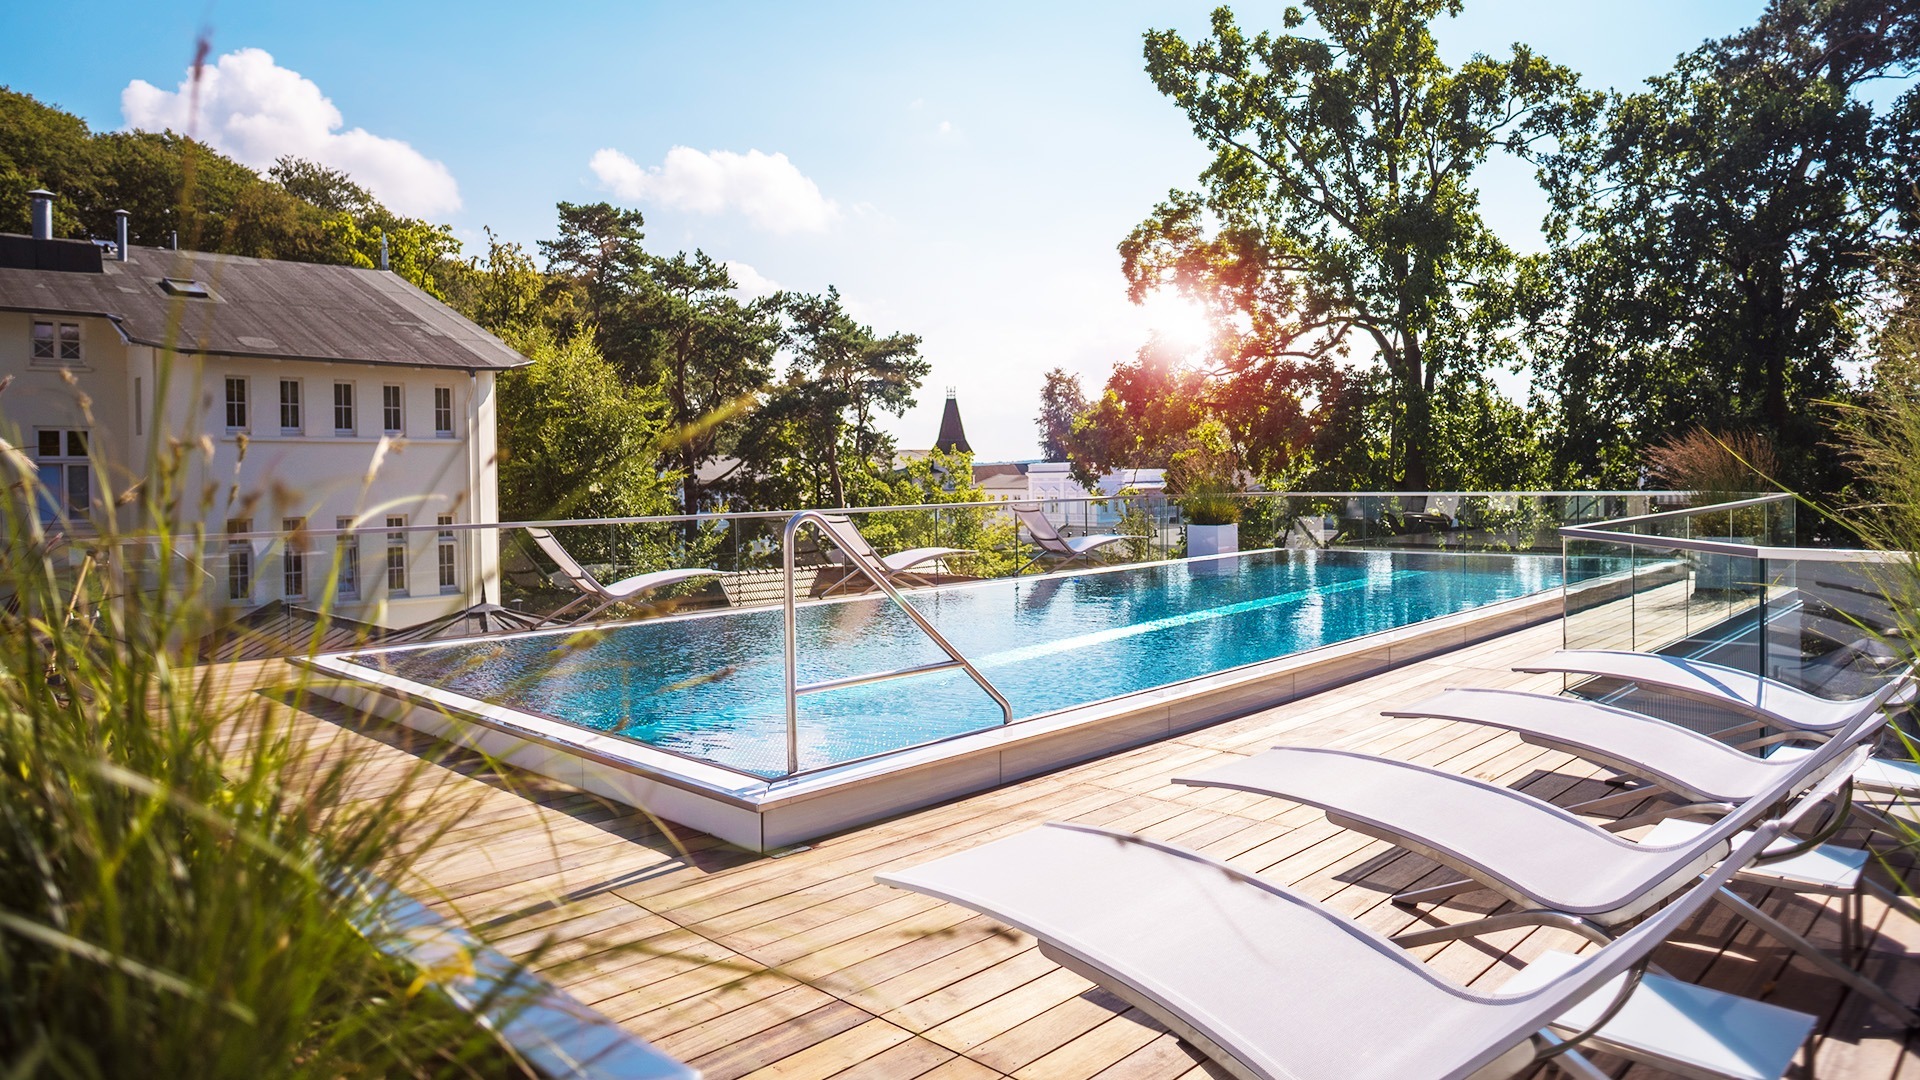 Der erfrischende Outdoor-Pool des Wellness- & Spa-Hotels Roewers lädt zur Entspannung und Erholung unter freiem Himmel ein.